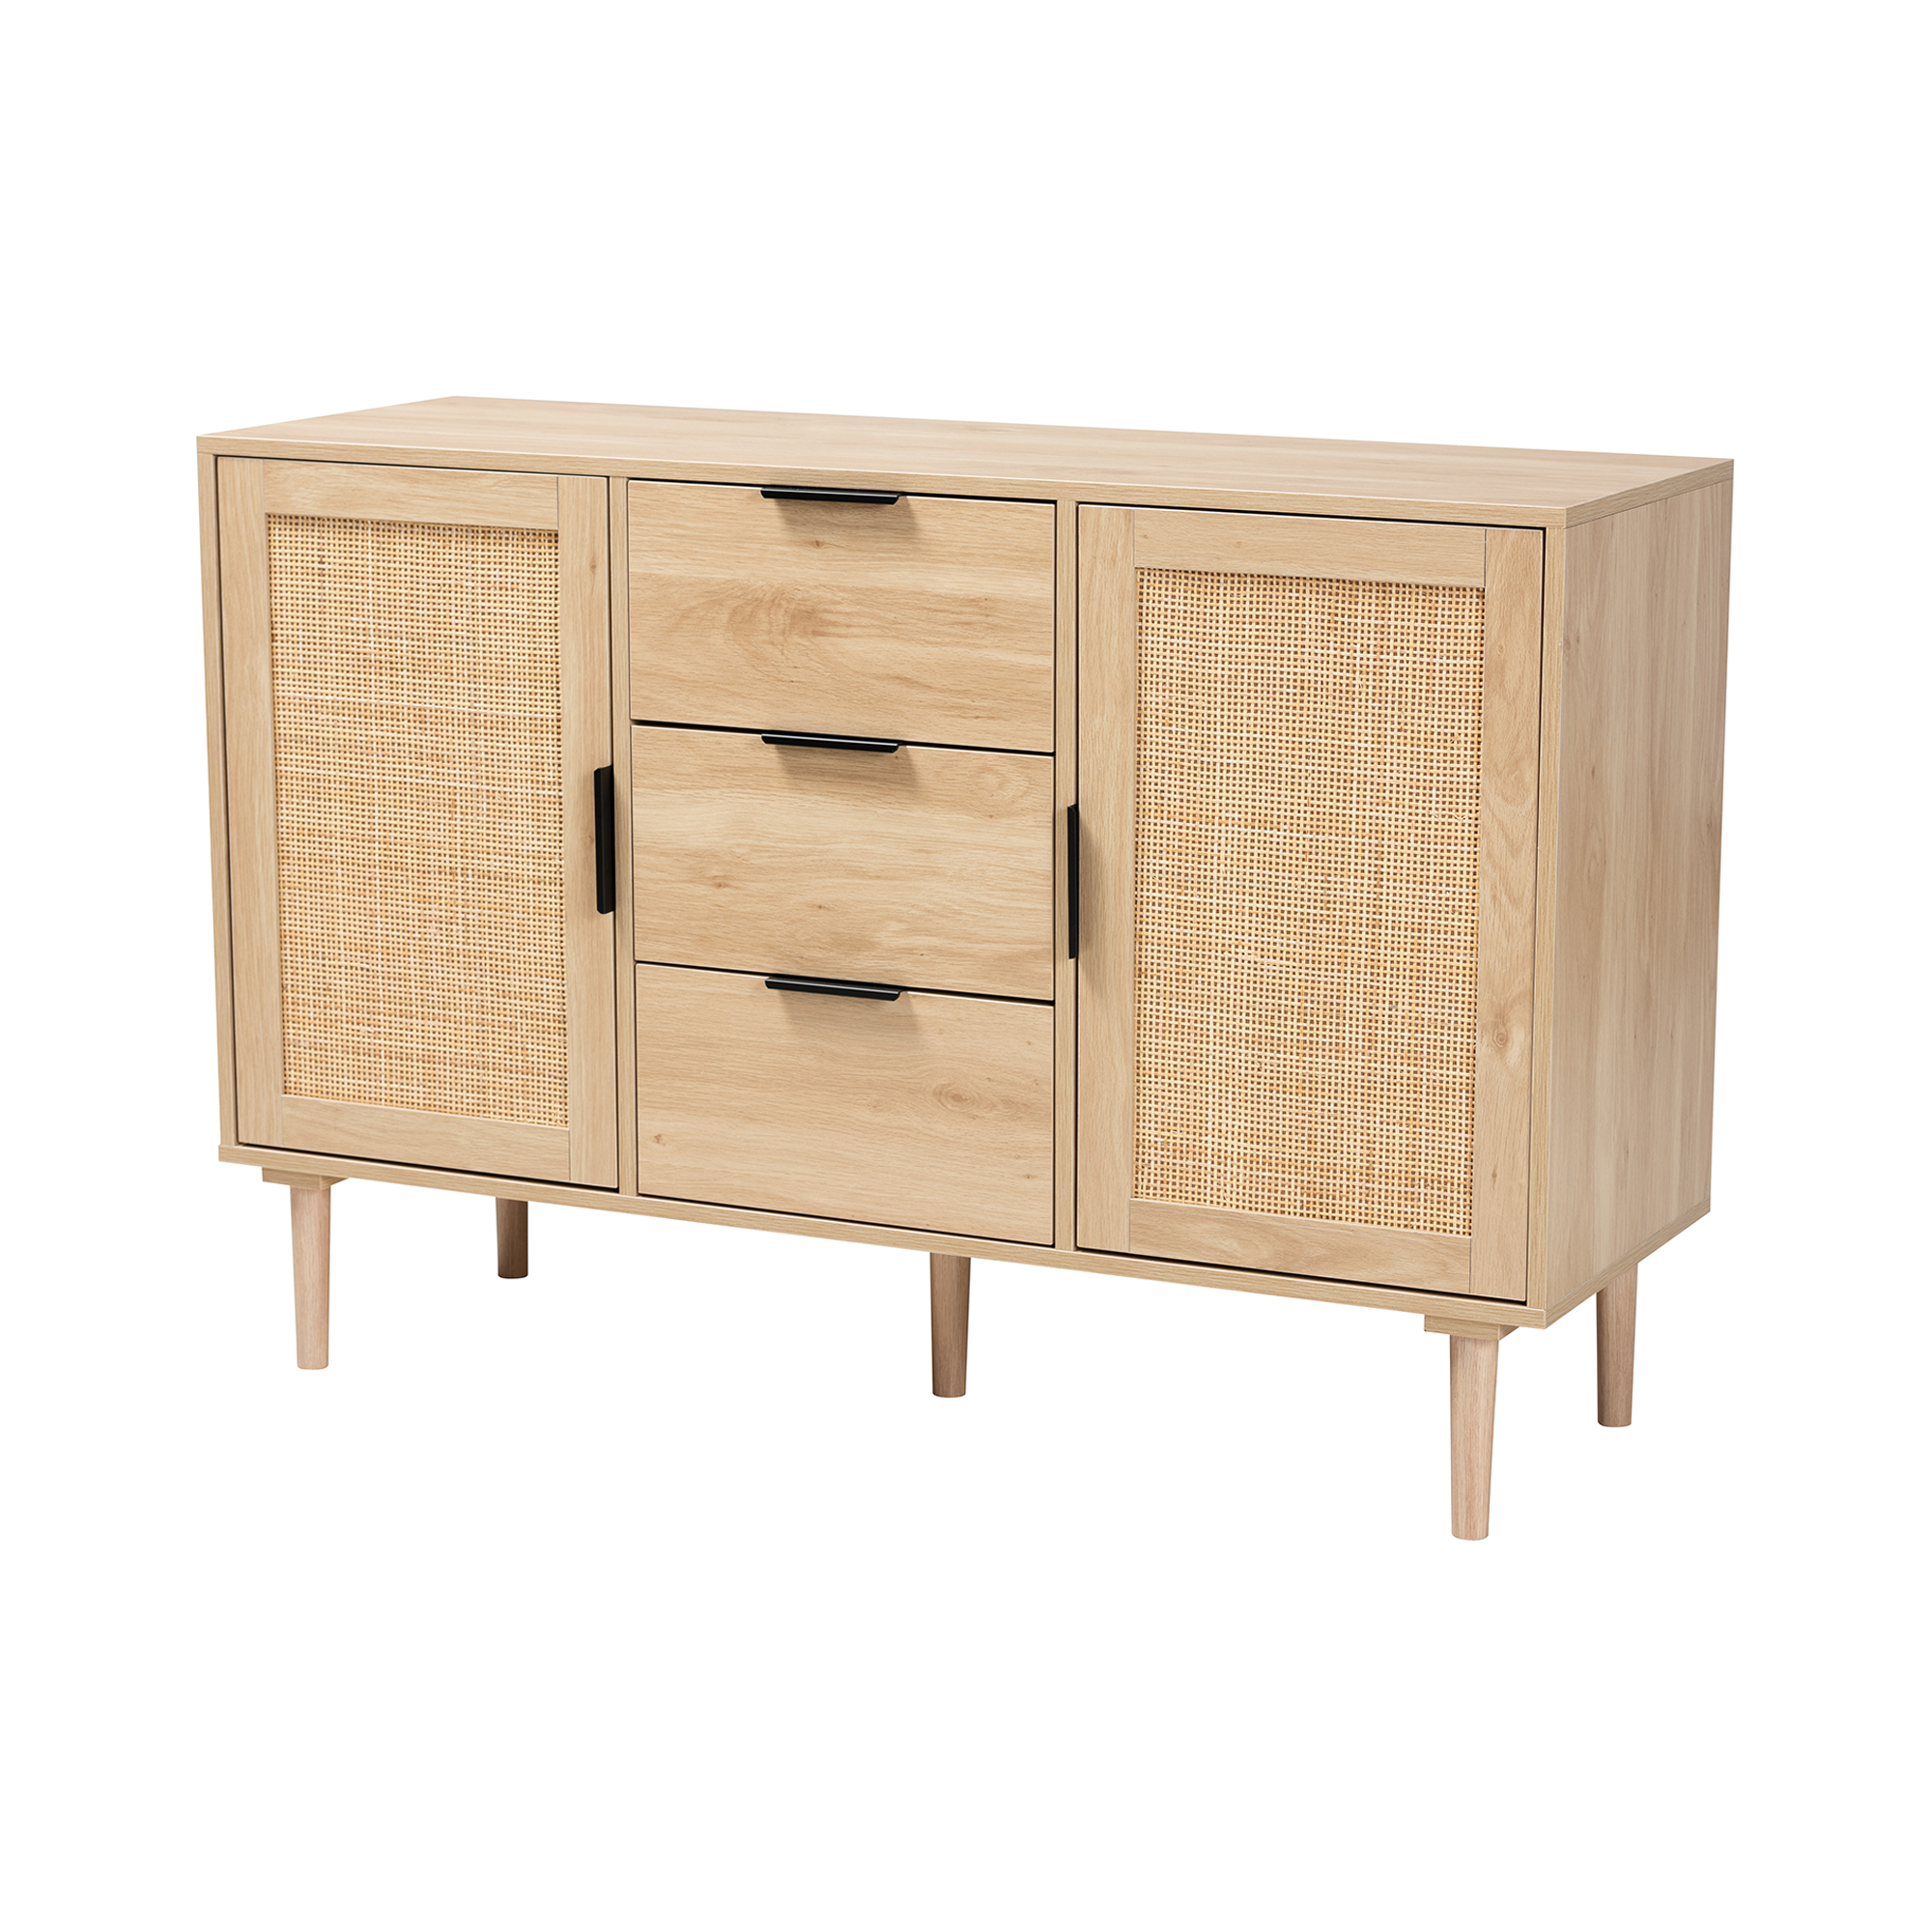 Baxton Studio Valtina Modern Wood 3 Drawer Storage Unit with